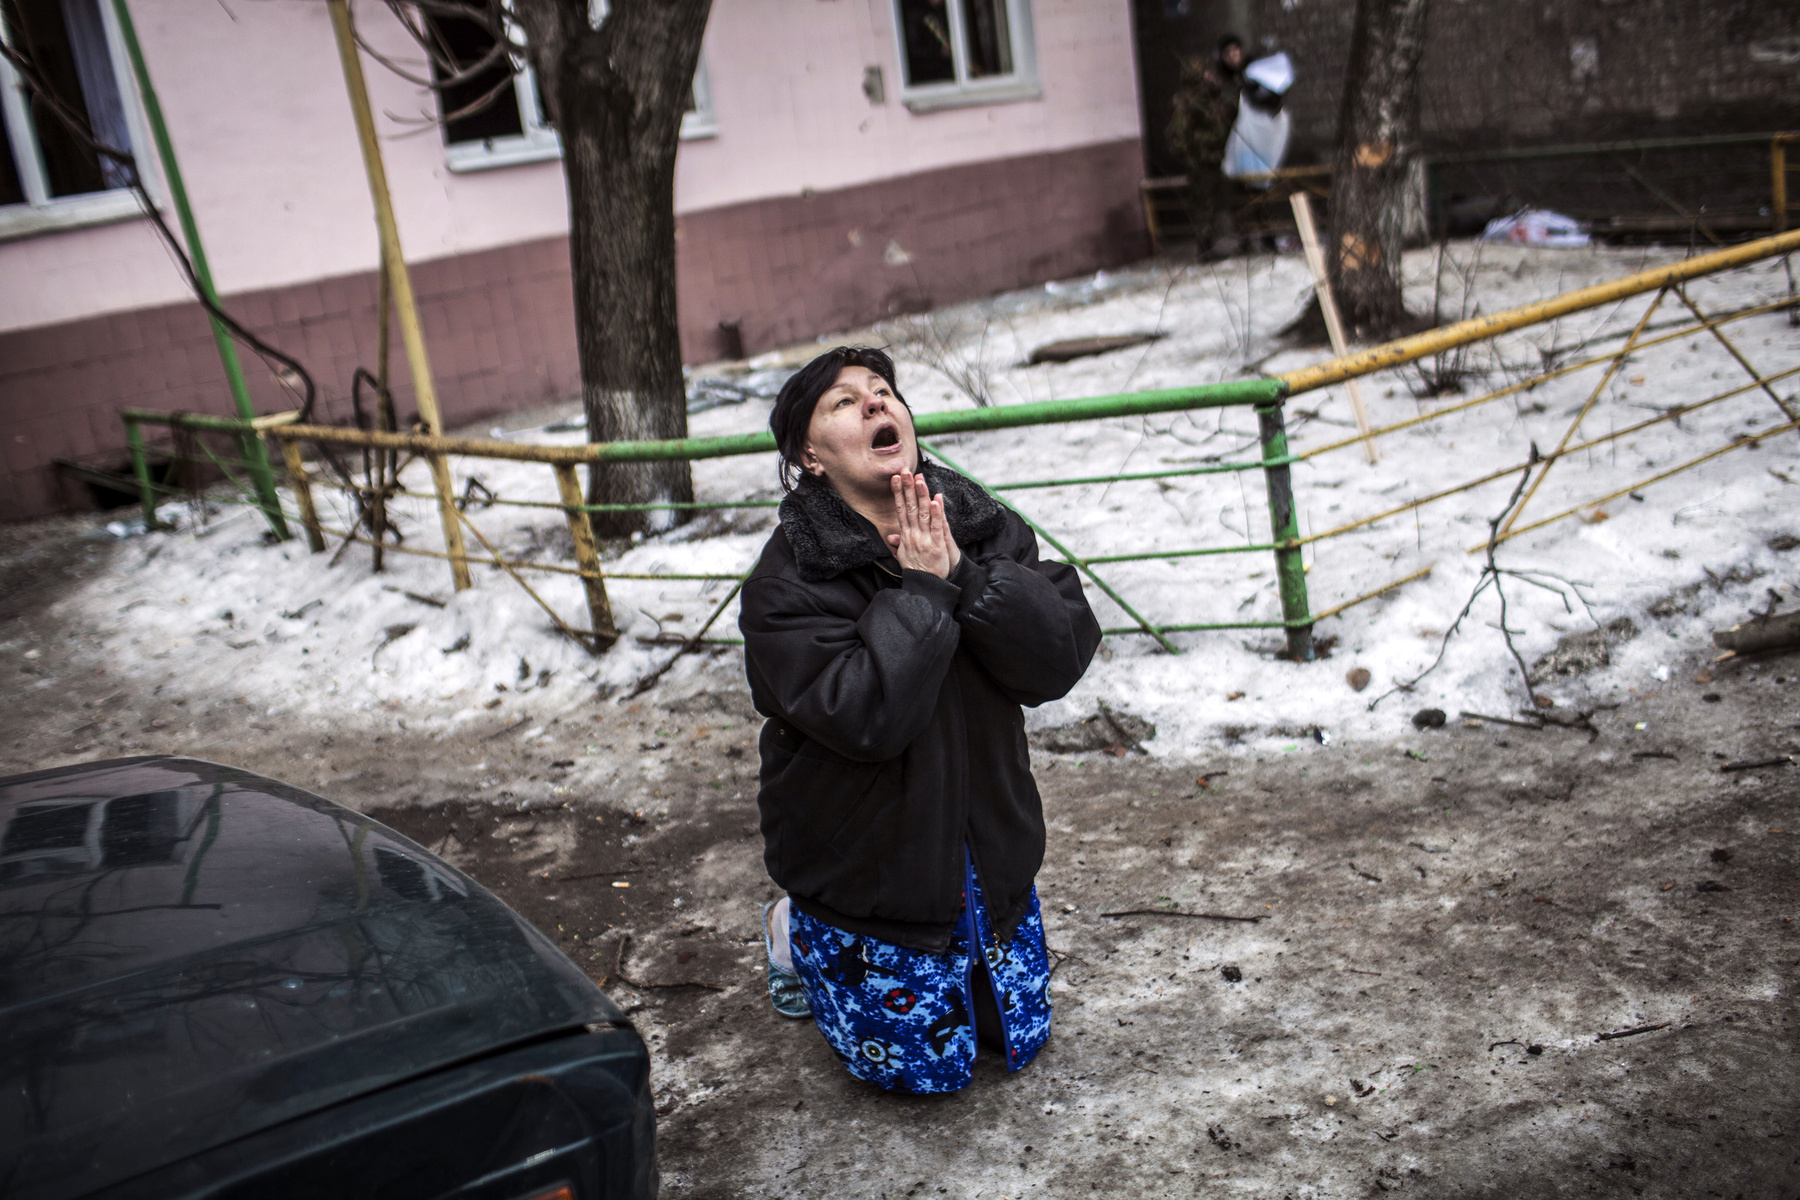 Egy ukrán nő Porosenkó elnök nevét kiabálja, és arra kéri, ne bombázzák tovább Donyecket.